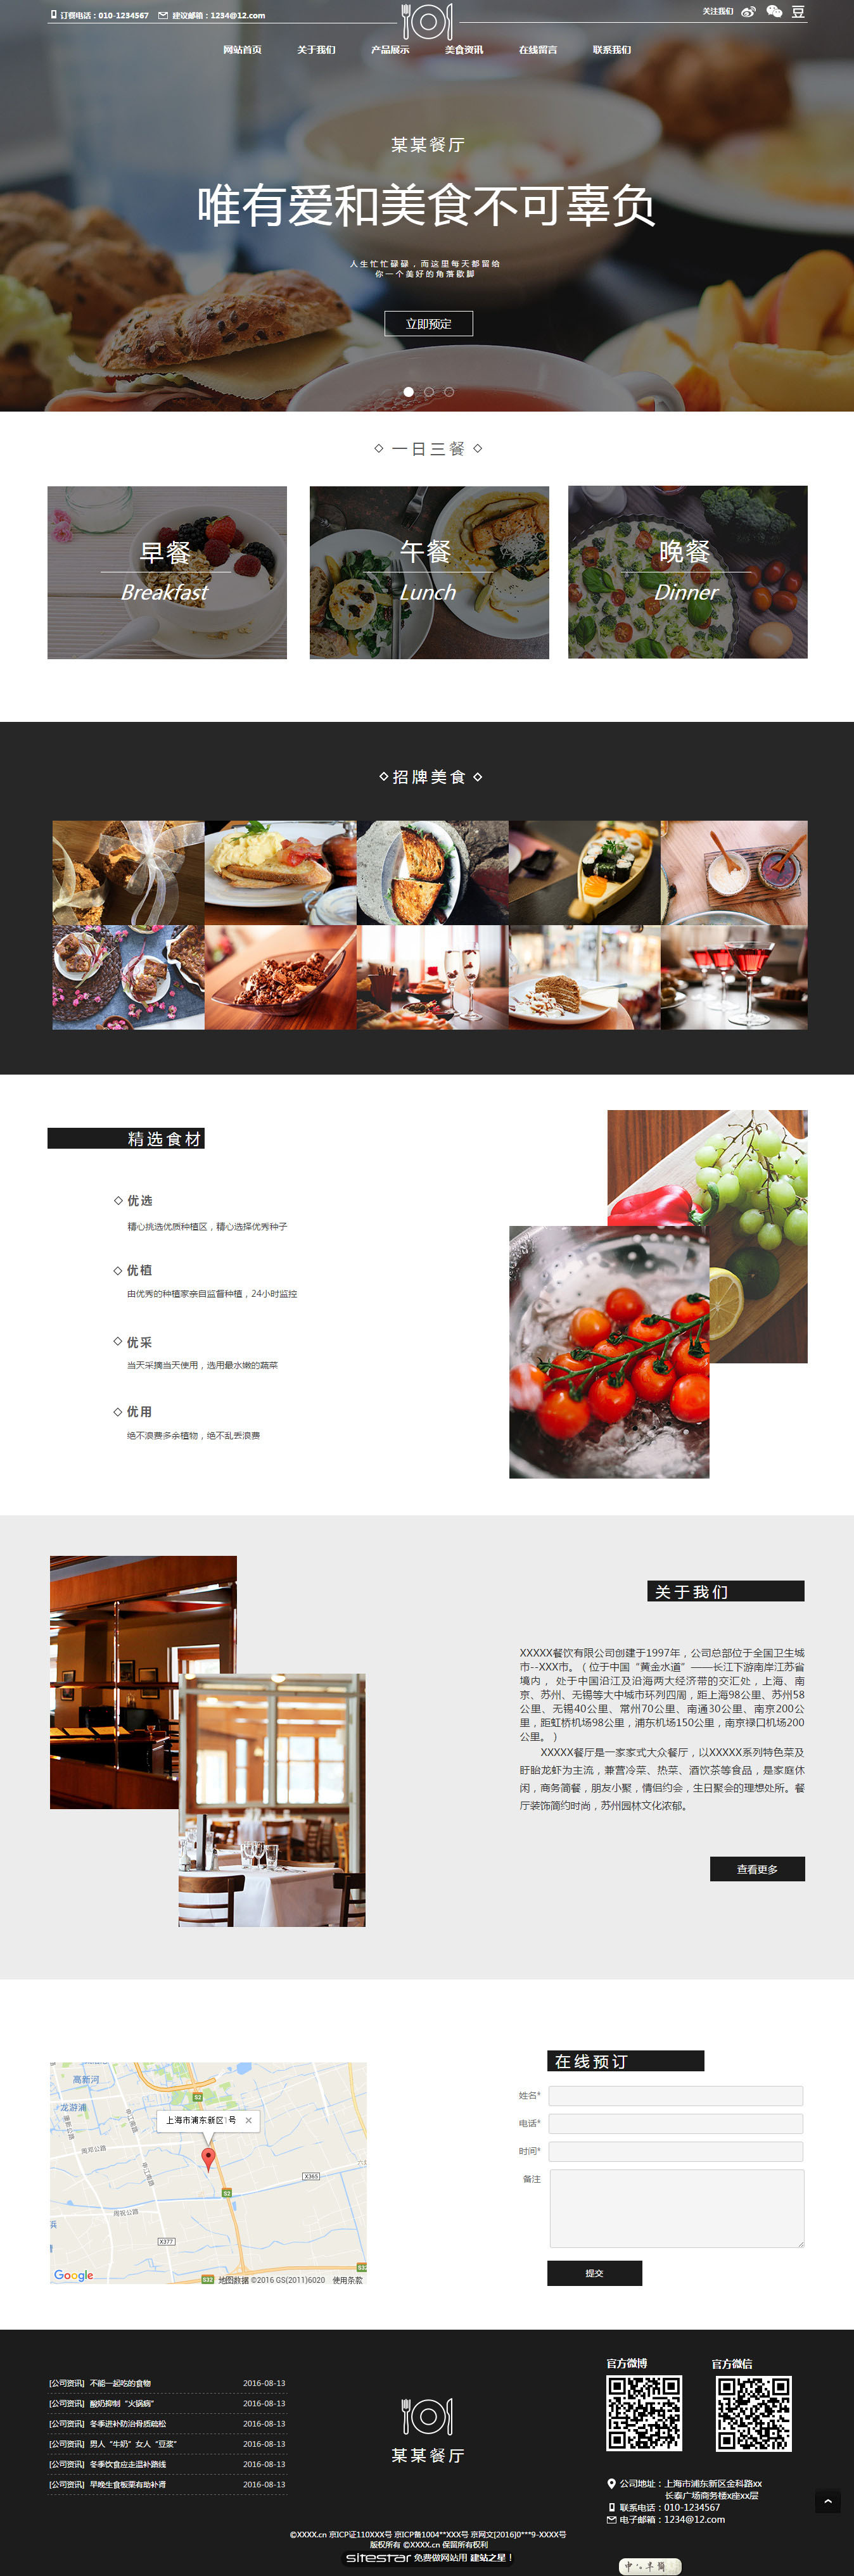 企业网站精美模板-restaurant-88